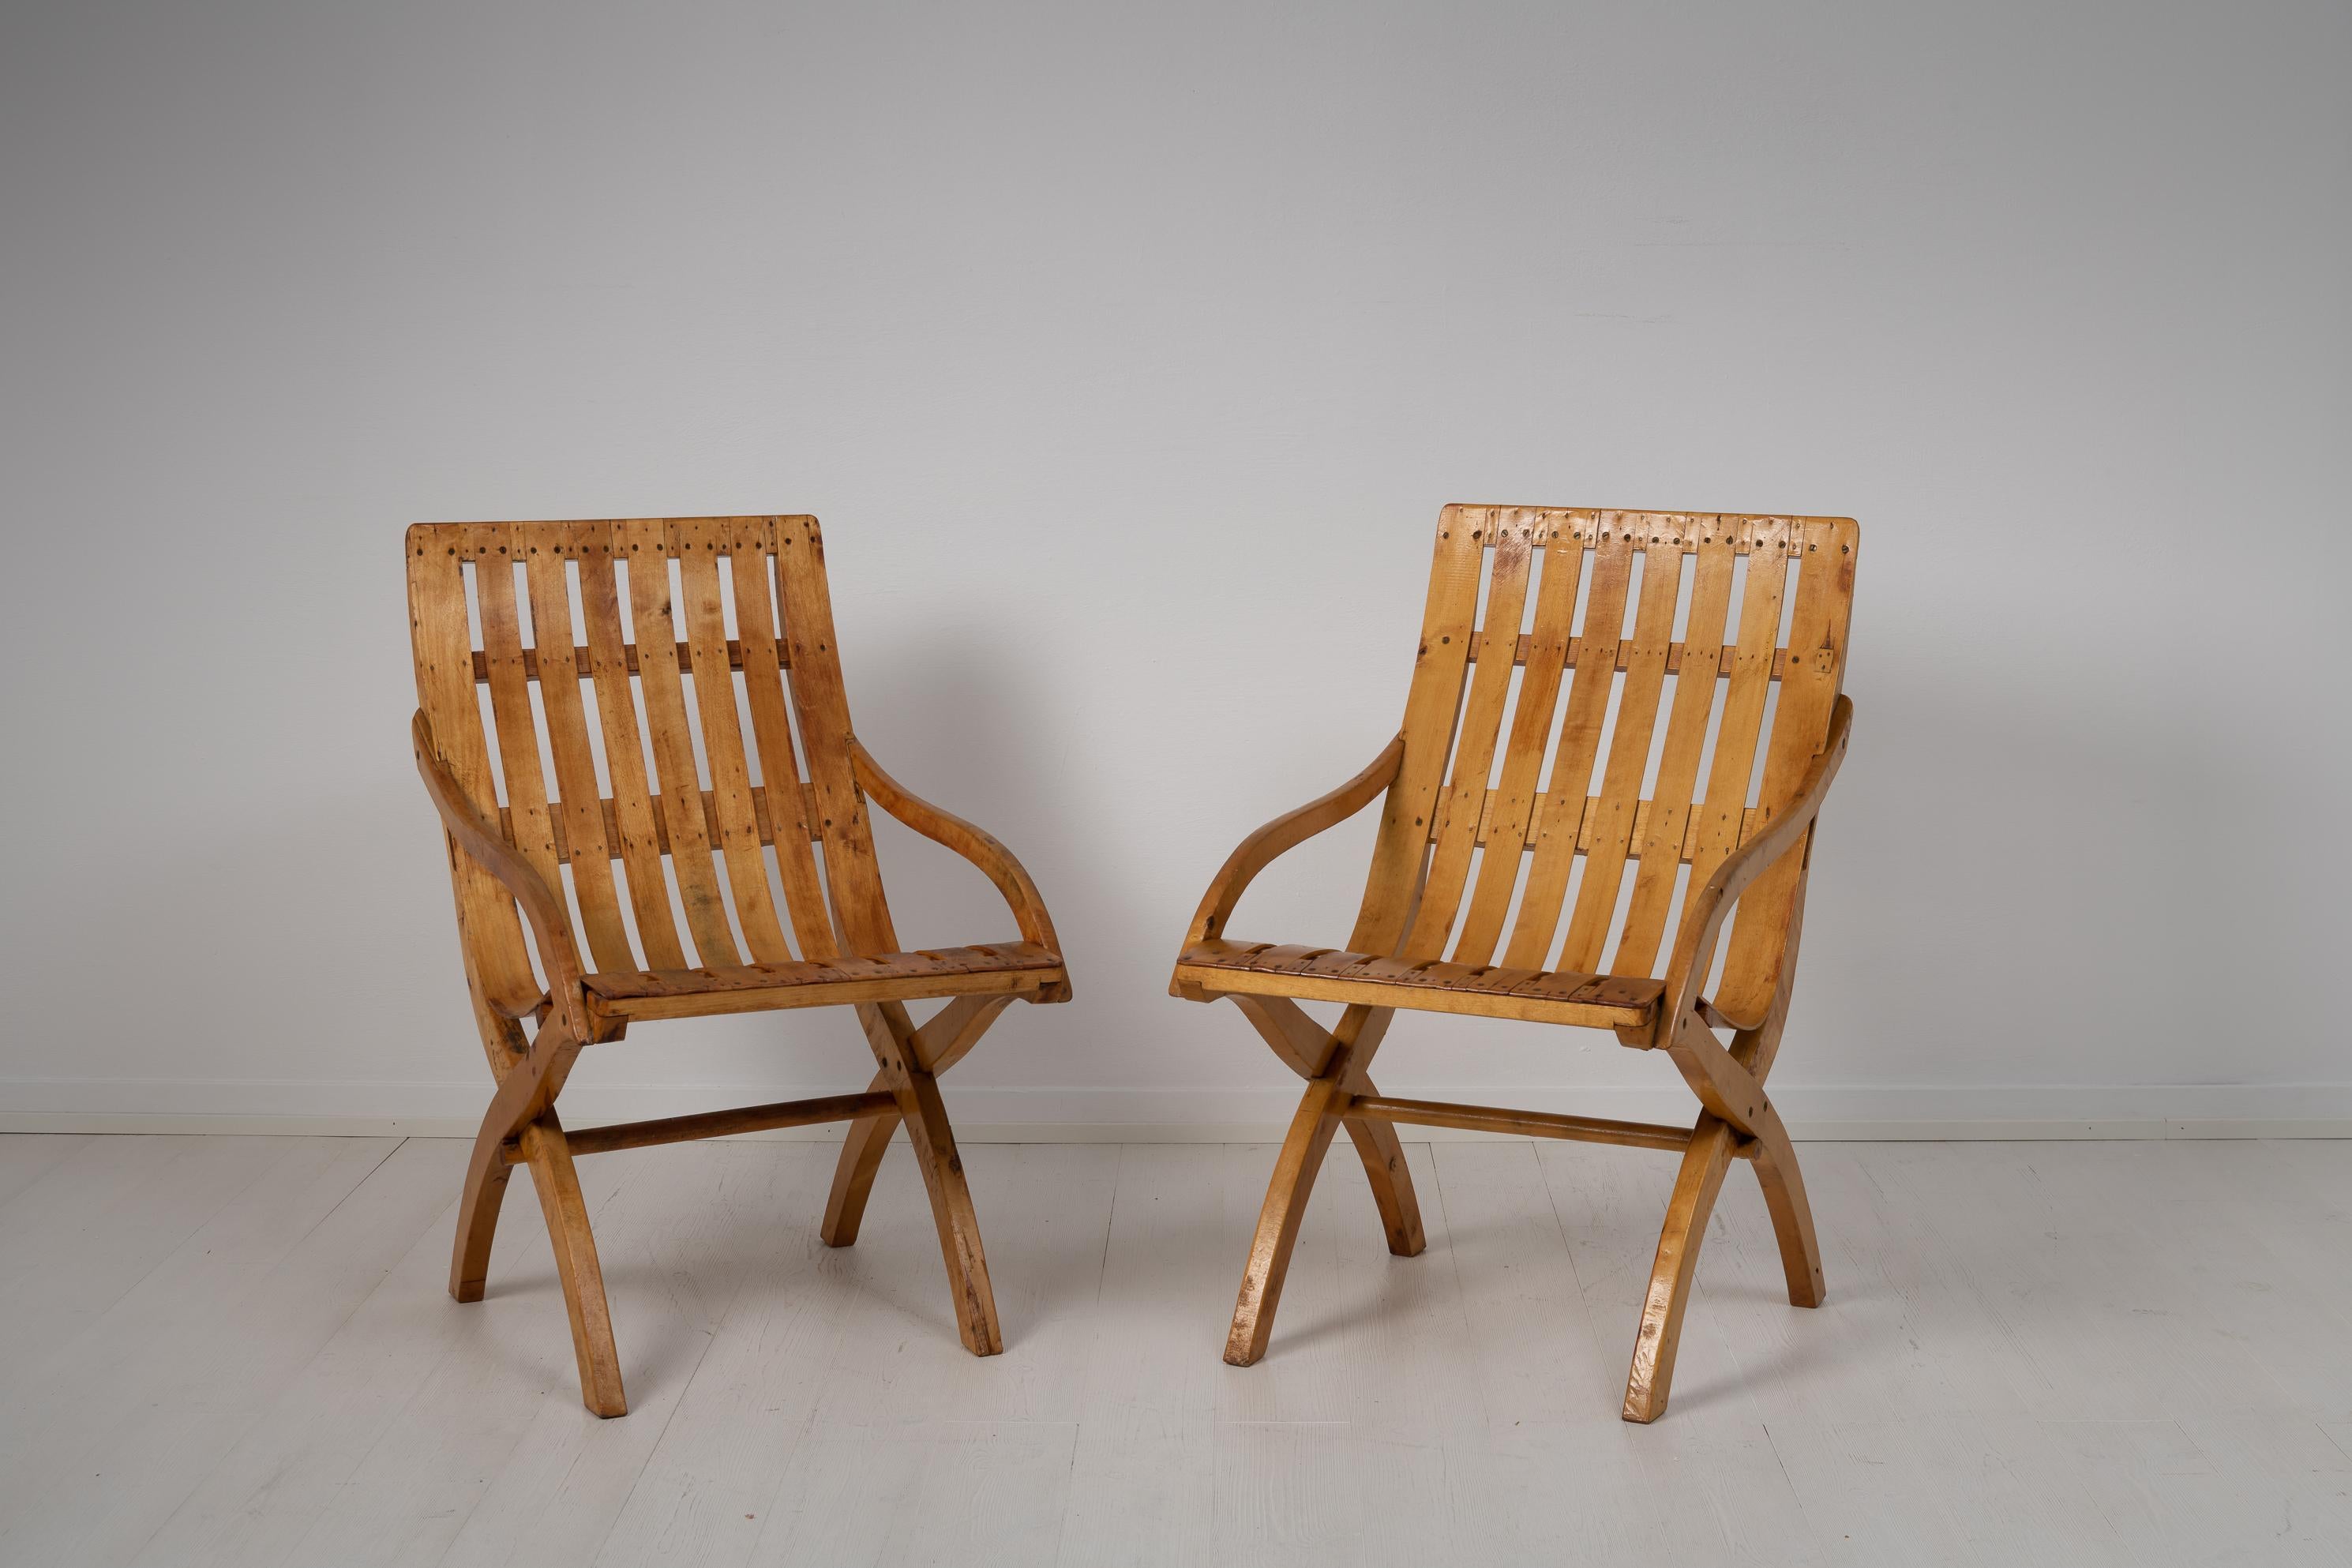 Fauteuils en bois brut de pin et de bouleau des années 1930, pendant la période de la Grâce suédoise. Les chaises sont en bois nu et présentent les caractéristiques typiques du design suédois de l'époque. Avec des designs équilibrés et une élégance